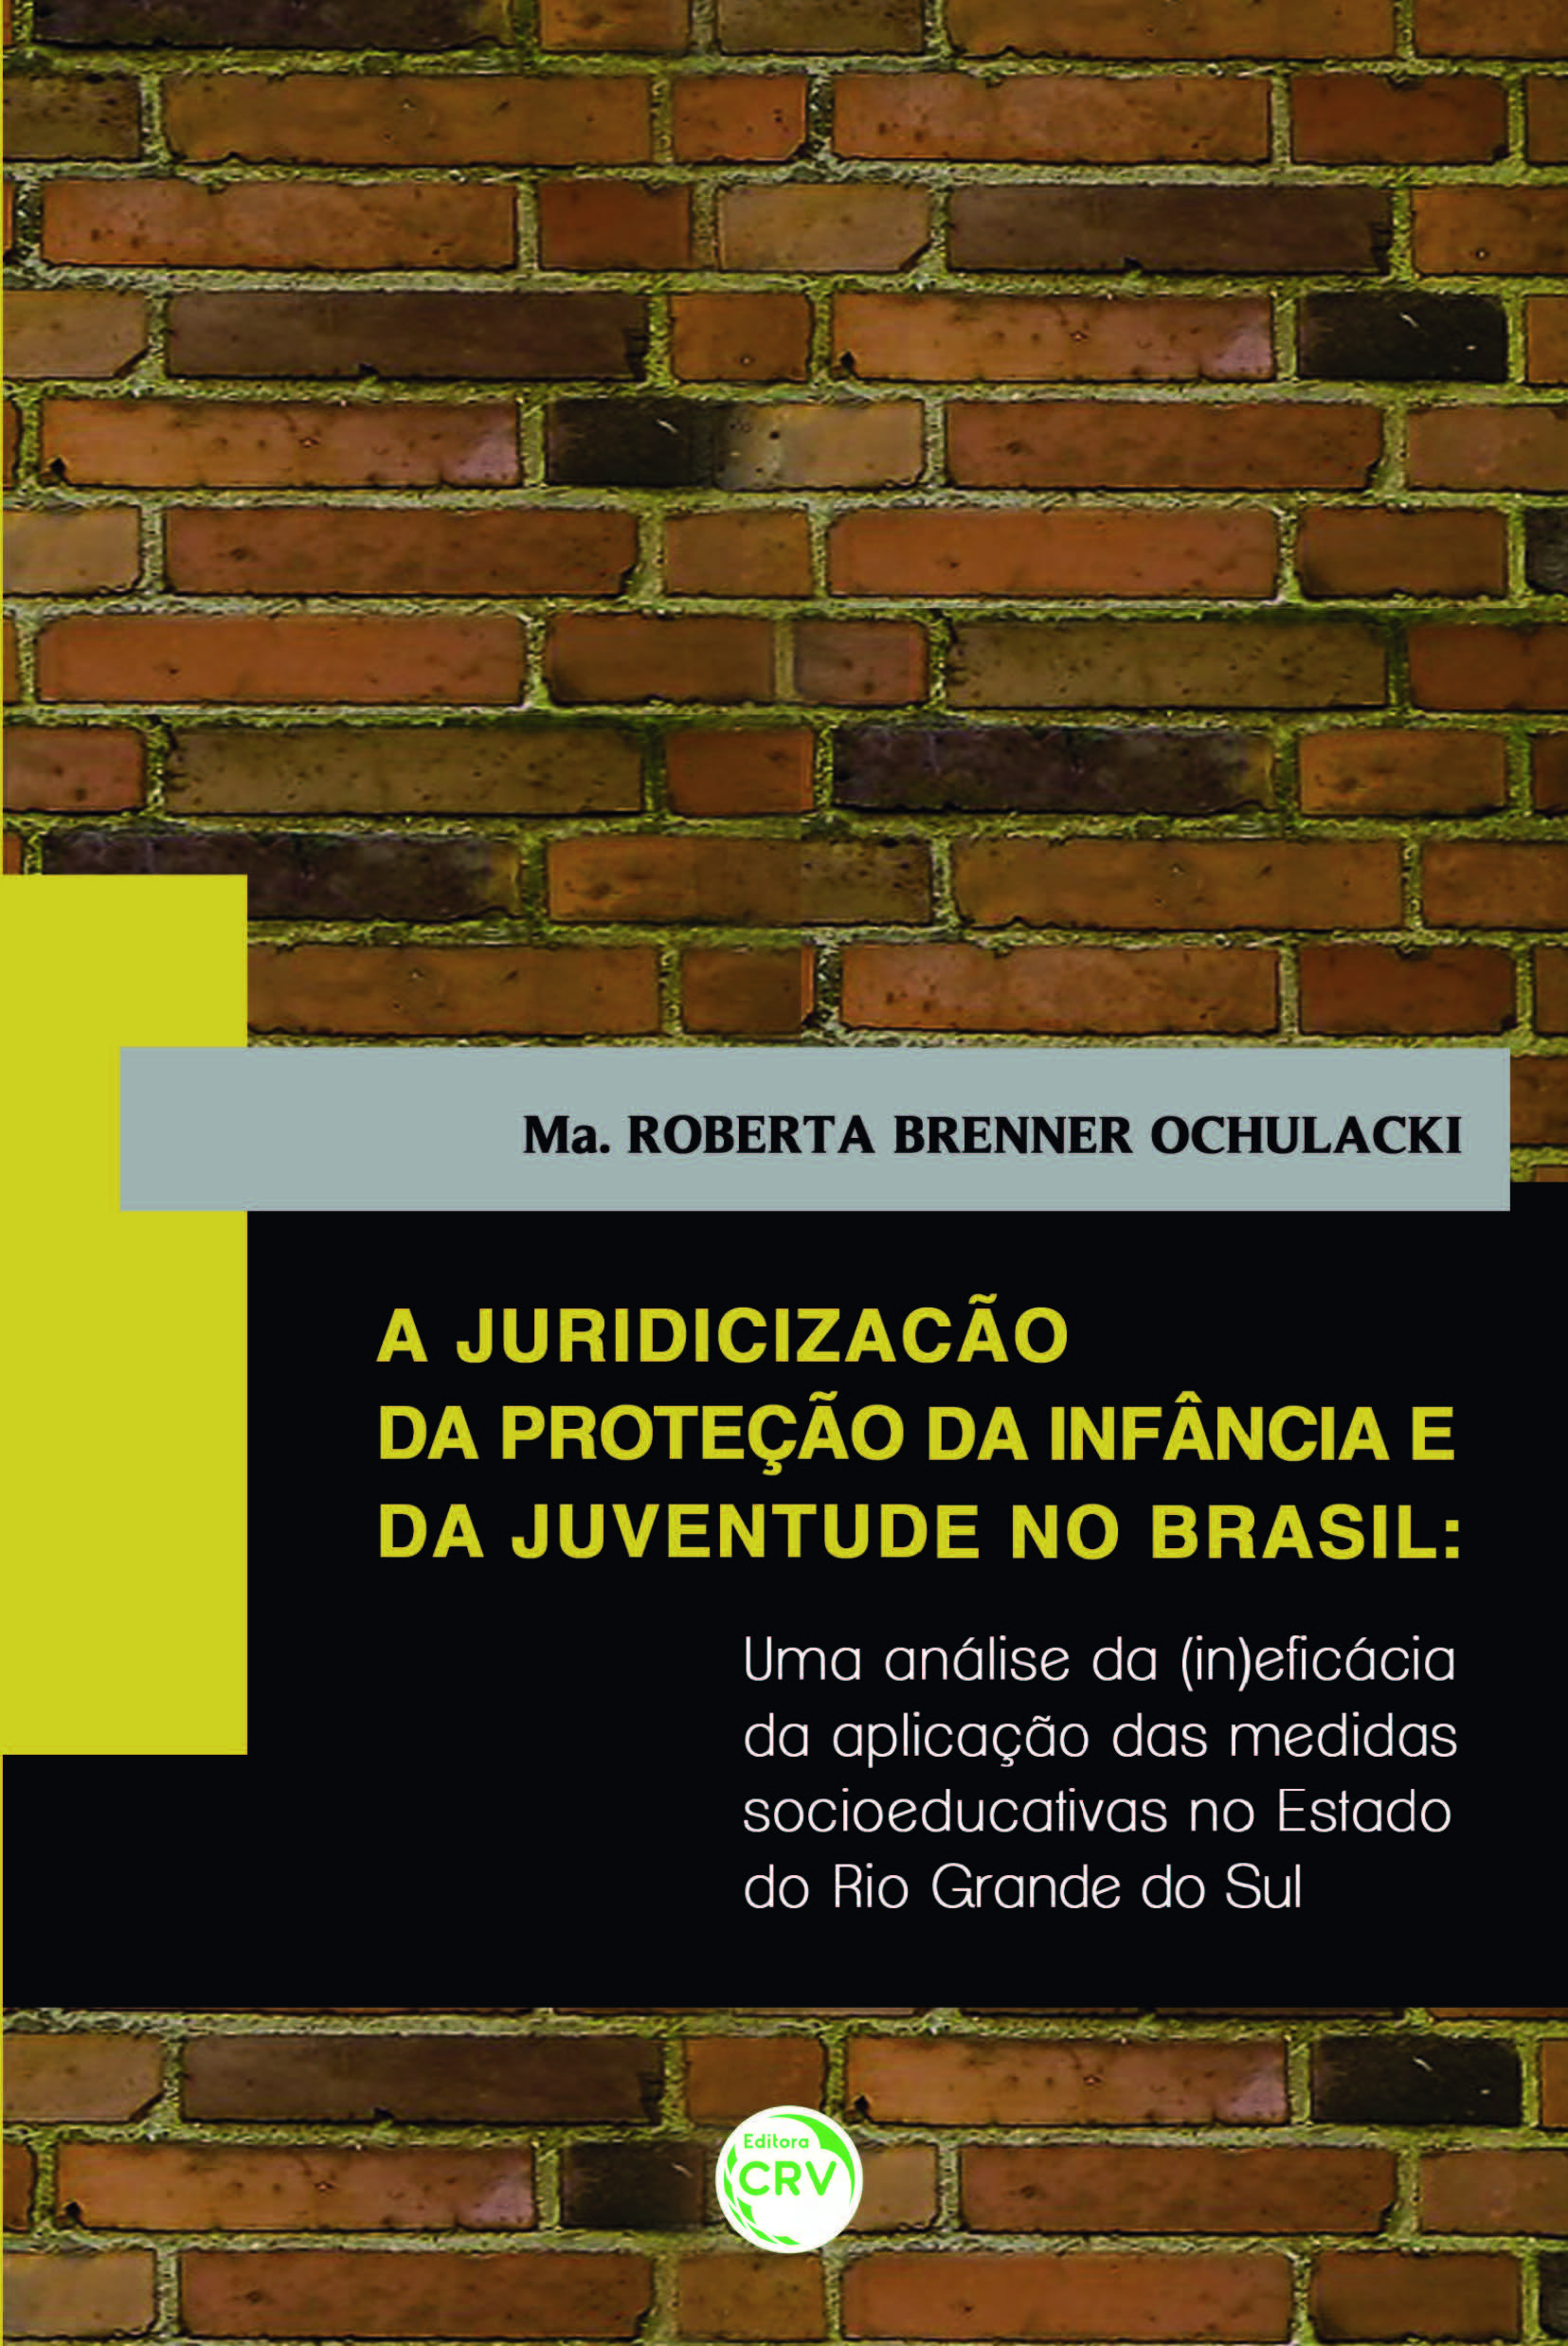 Capa do livro: A JURIDICIZAÇÃO DA PROTEÇÃO DA INFÂNCIA E DA JUVENTUDE NO BRASIL:<br>uma análise da (in)eficácia da aplicação das medidas socioeducativas no estado do Rio Grande do Sul 